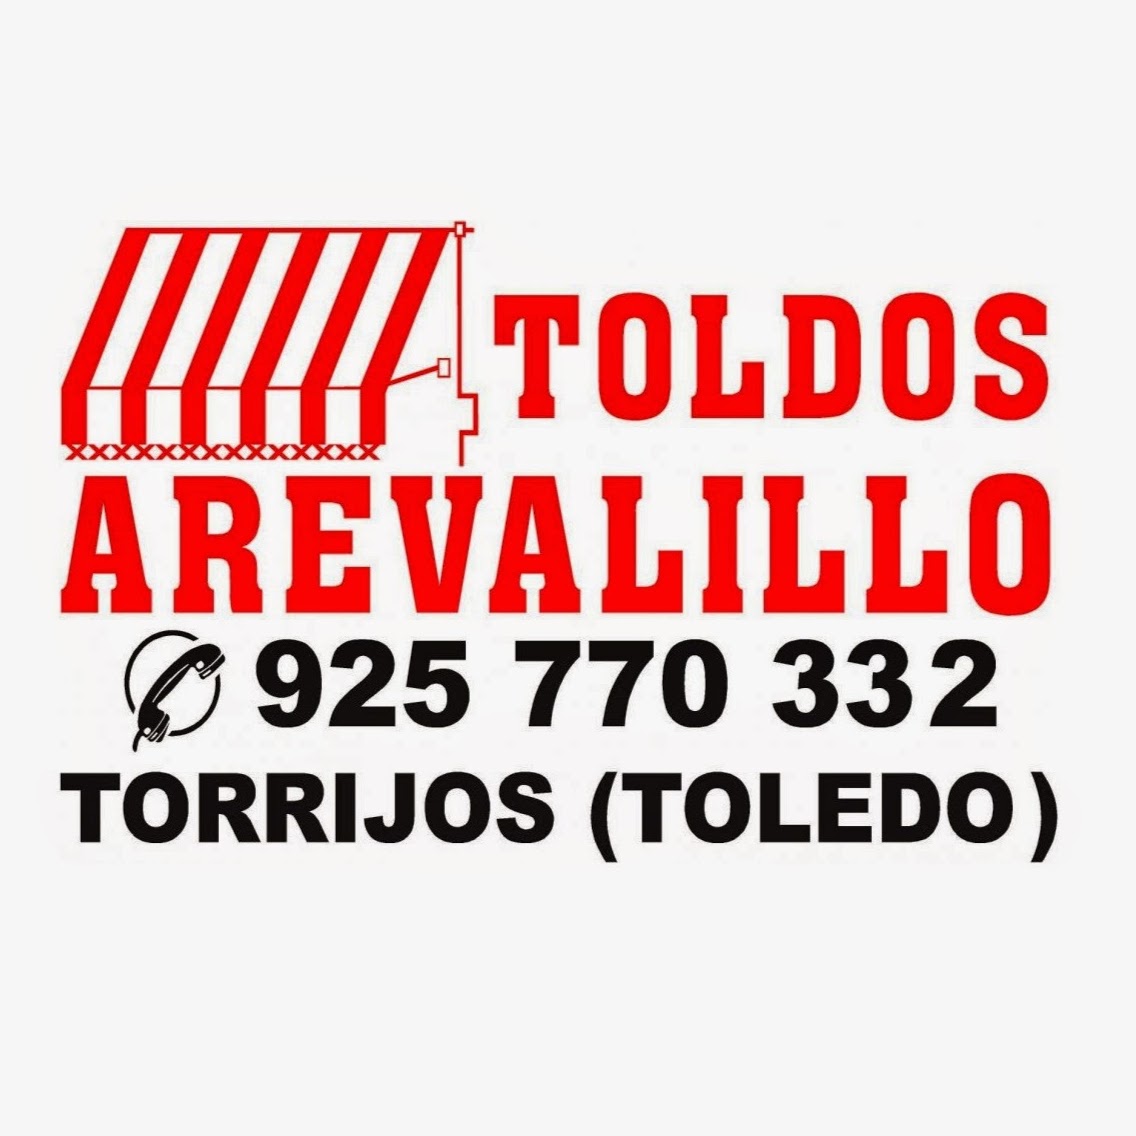 Toldos Arevalillo Logo